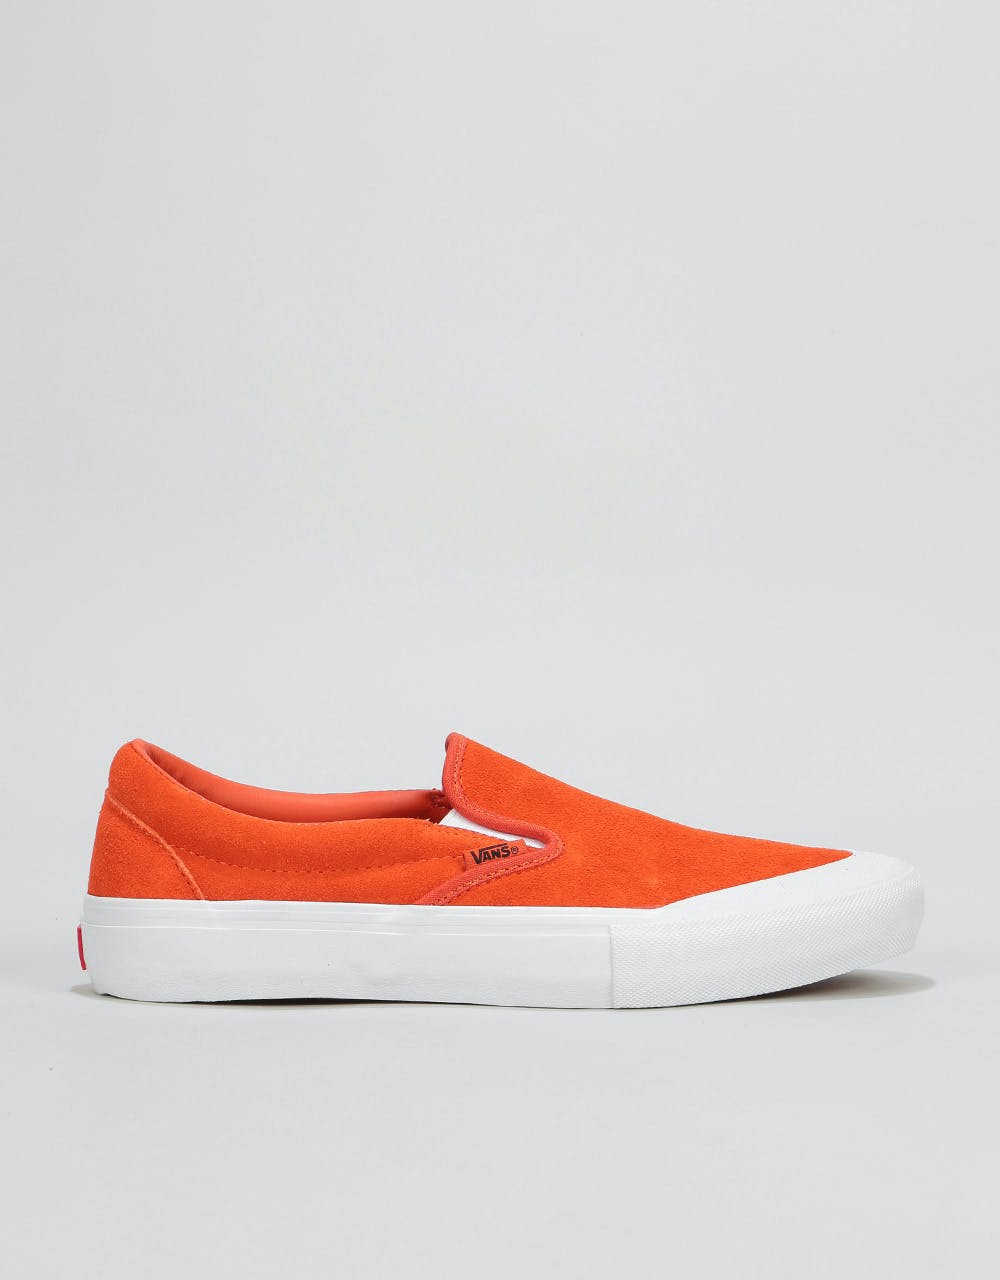 Vans Slip-On Pro Skate Shoes - Koi/True White